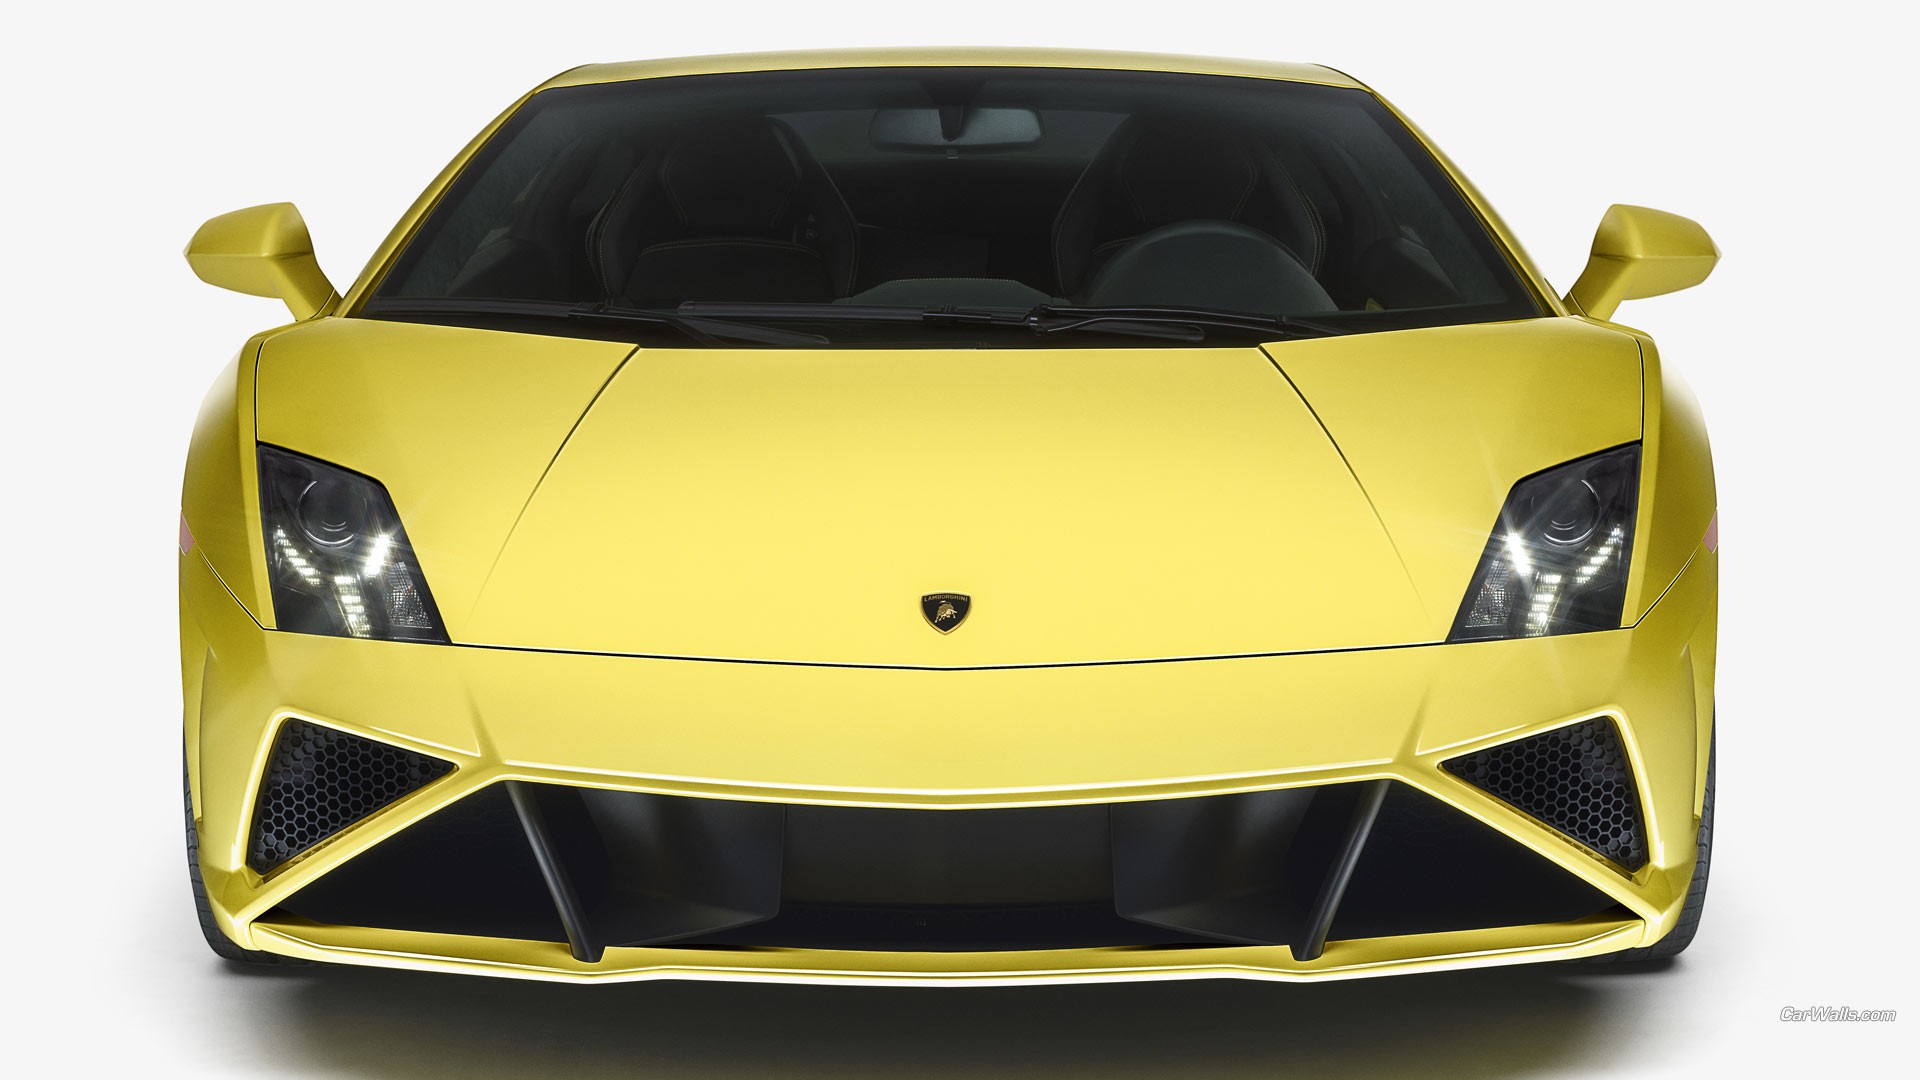 Бесплатное фото Lamborghini Murcielago в желтом цвете